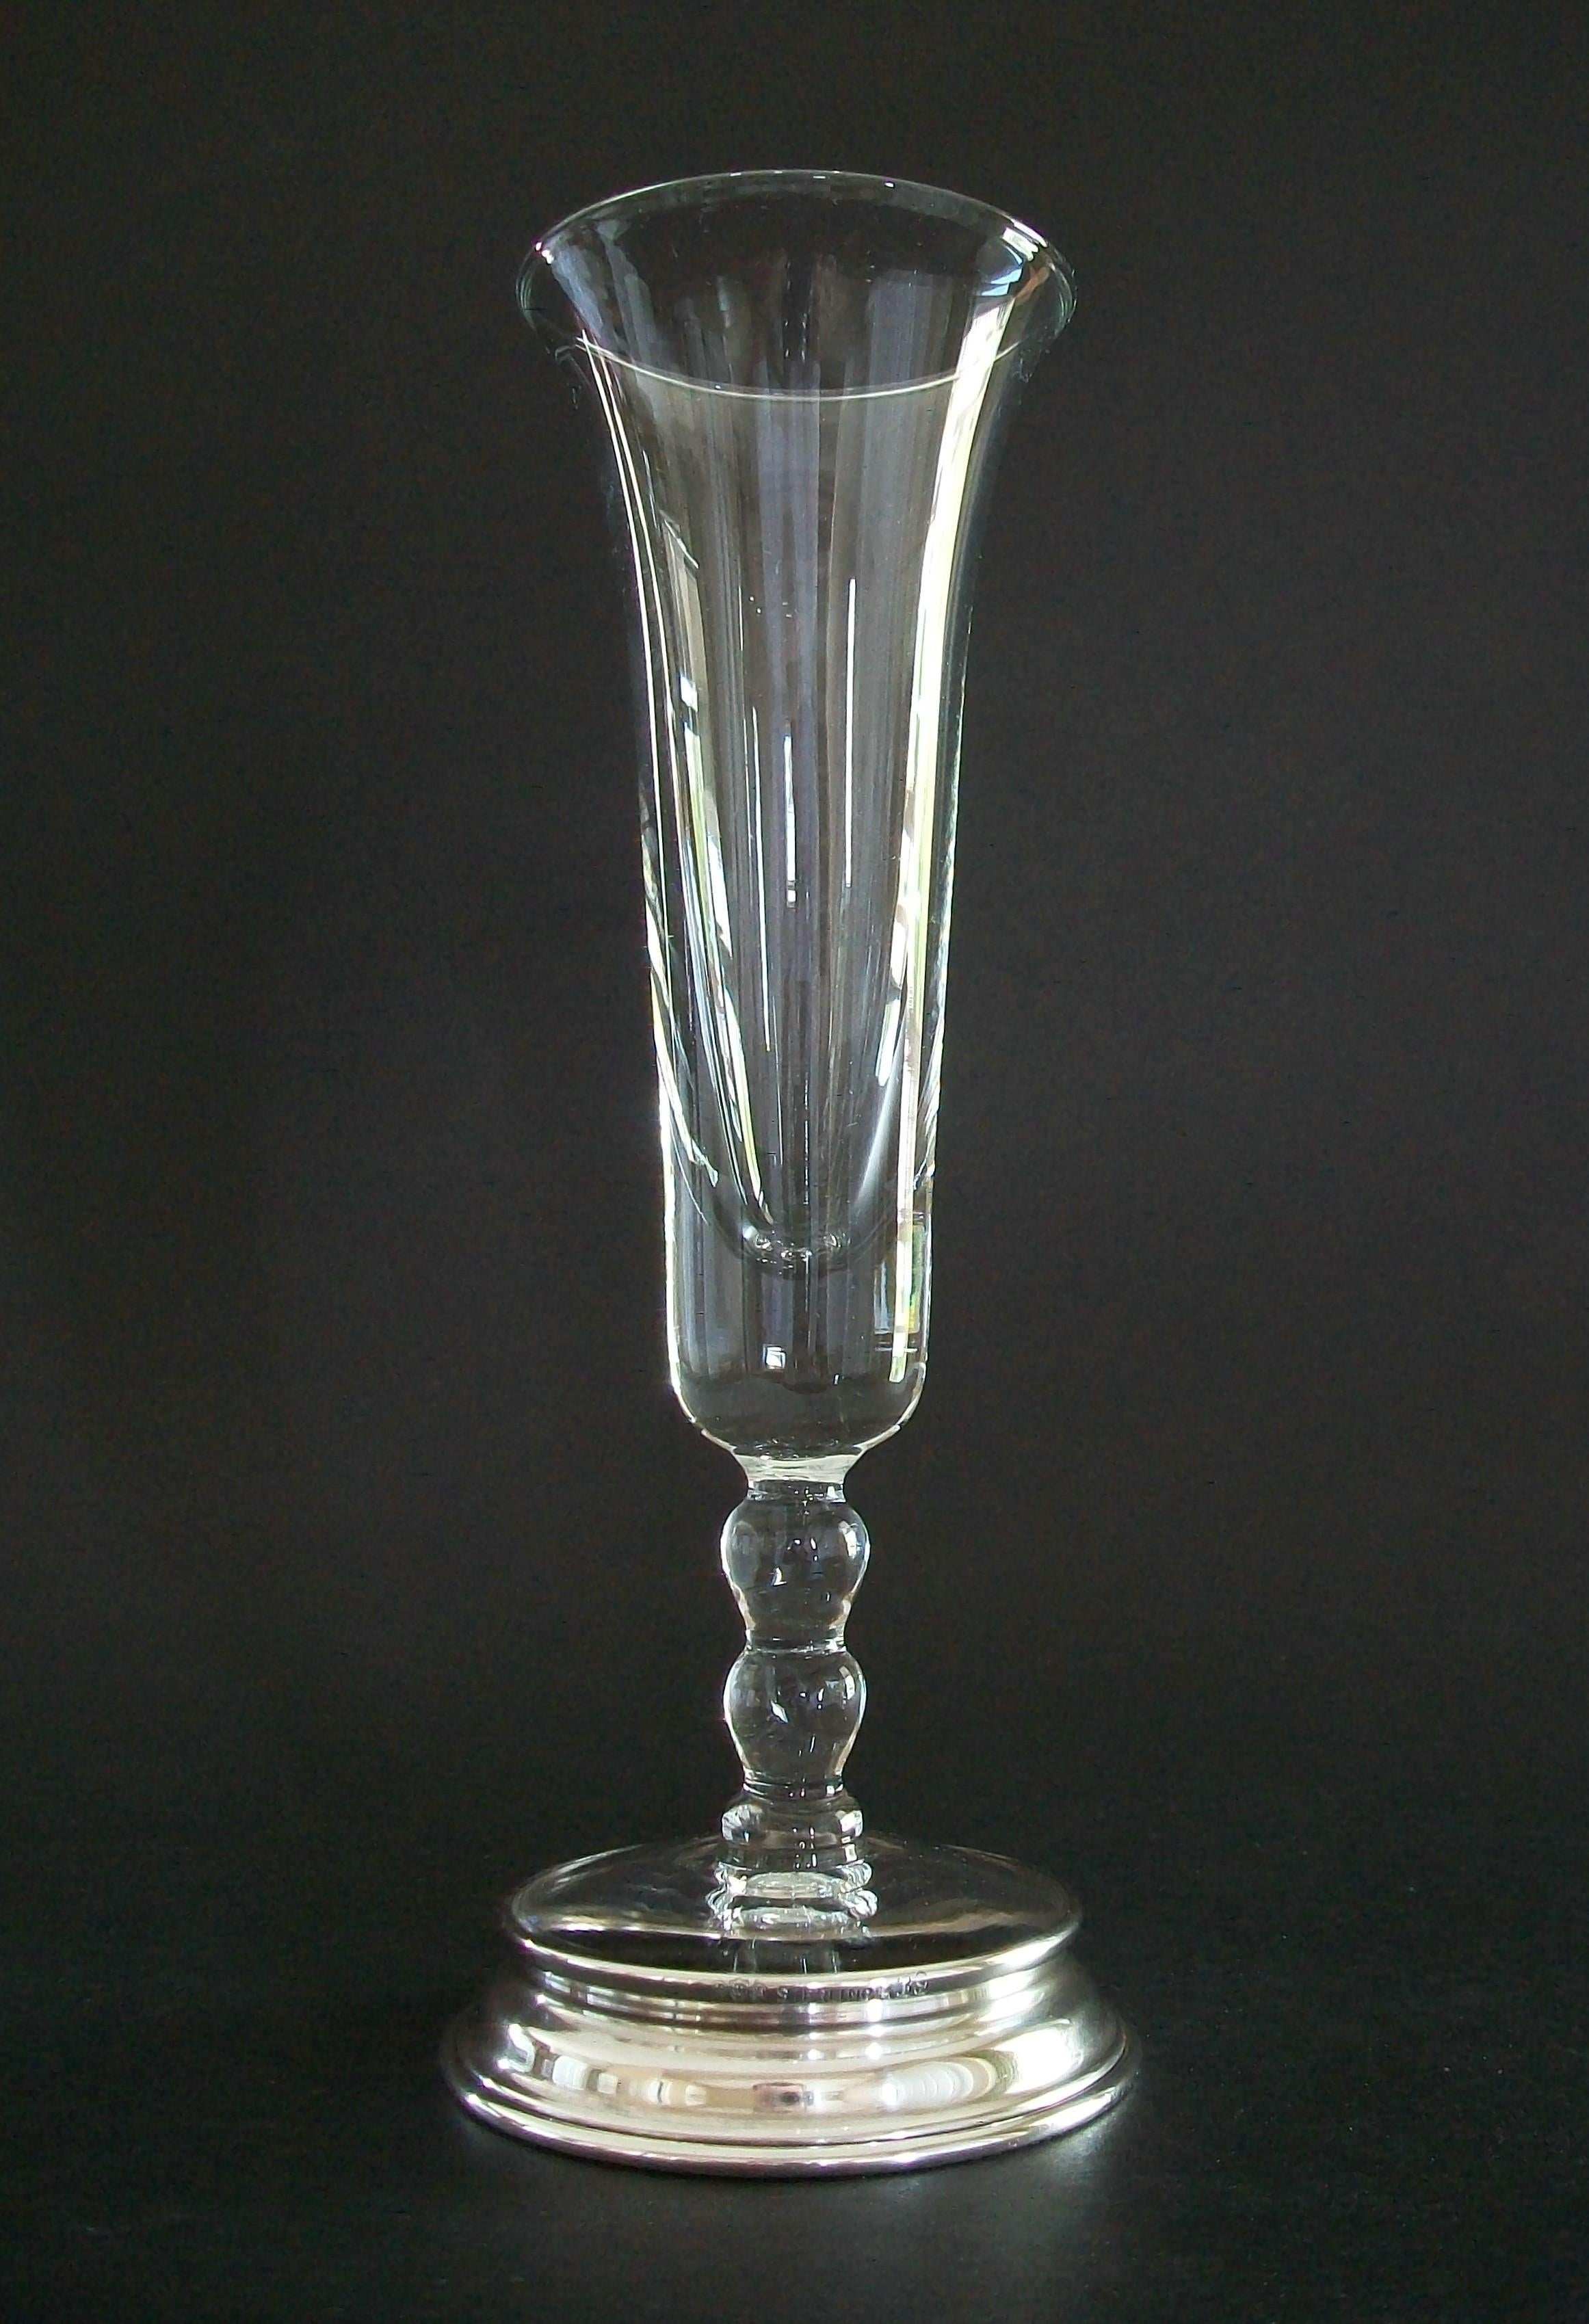 Vase trompette en verre Art Déco avec base en argent sterling - double boule en verre sur la tige - poinçons et STERLING R39 sur le bord de la base (tel que photographié) - Royaume-Uni - milieu du 20e siècle.

Excellent/neutre état vintage - tout